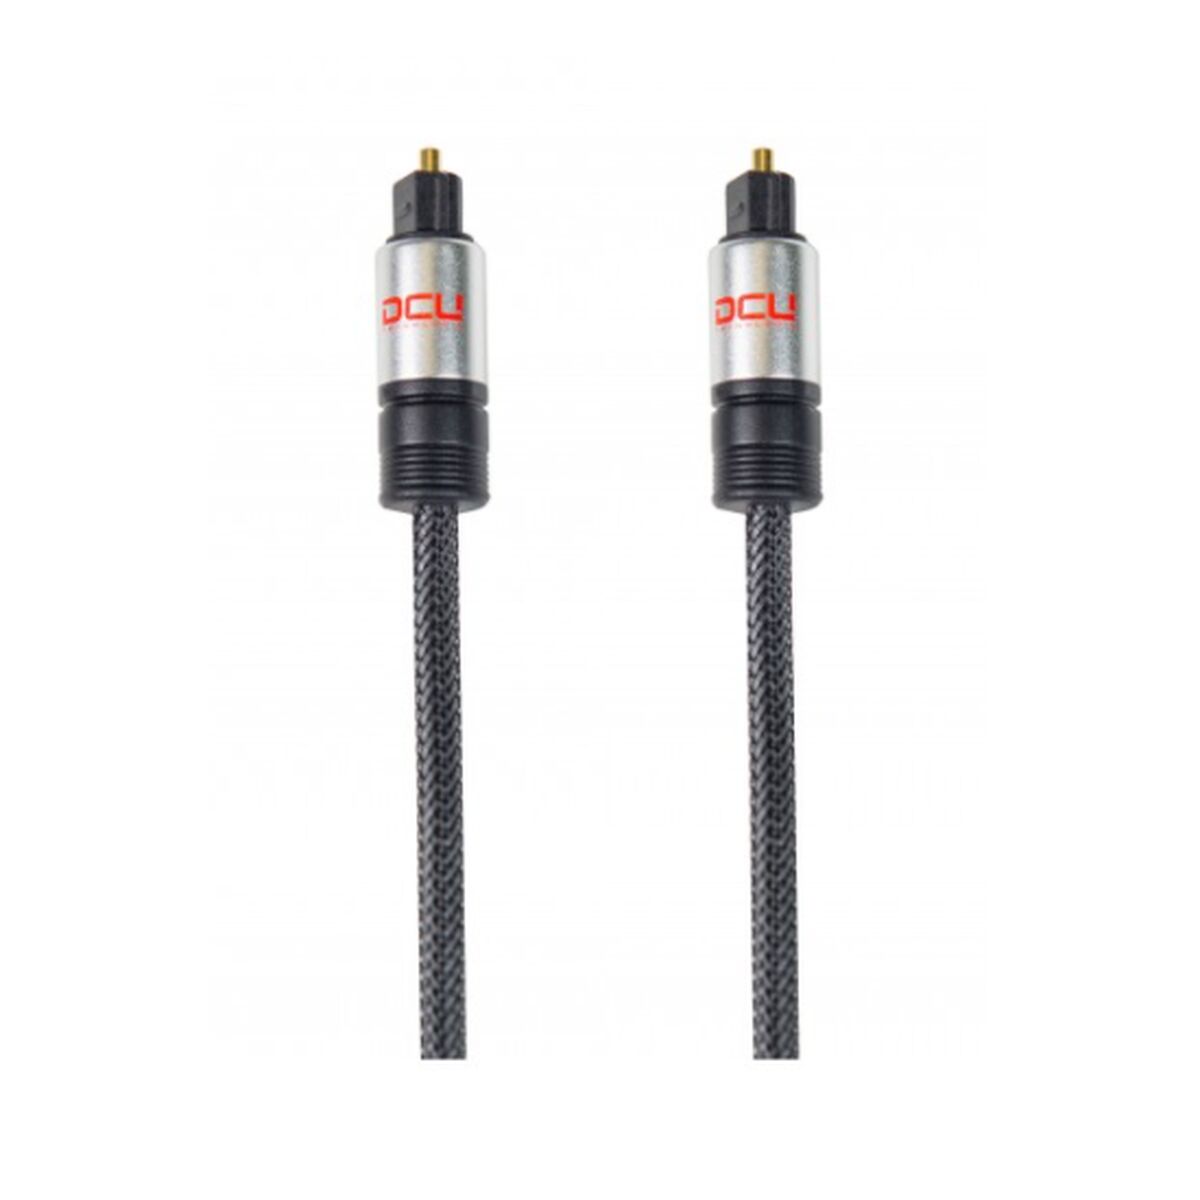 Cablu de fibra optica DCU 30751030 2 m Negru